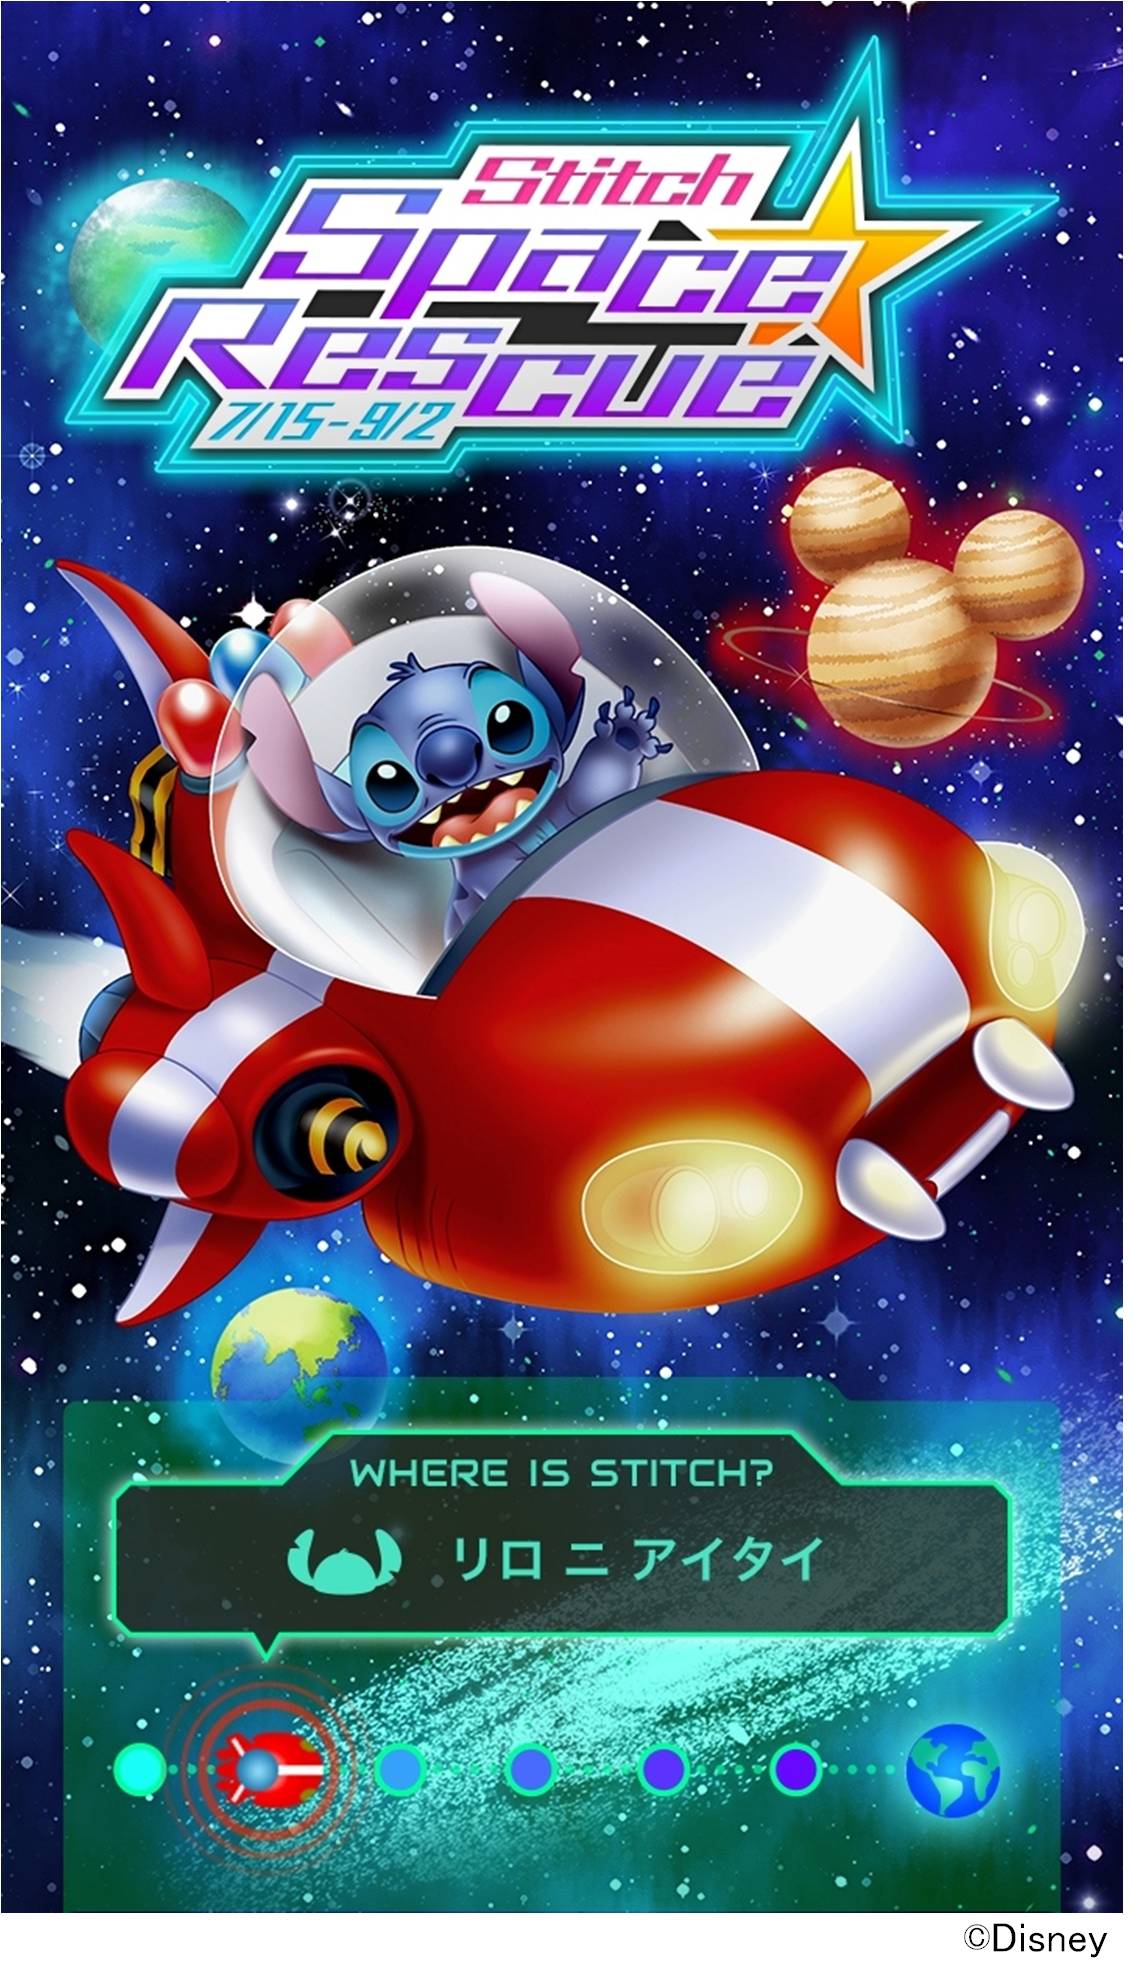 宇宙からハワイへ帰還するスティッチをお手伝いするイベント Stitch Space Rescue スティッチ スペースレスキュー をディズニー マーケット ディズニーパスで開催 ウォルト ディズニー ジャパン株式会社のプレスリリース